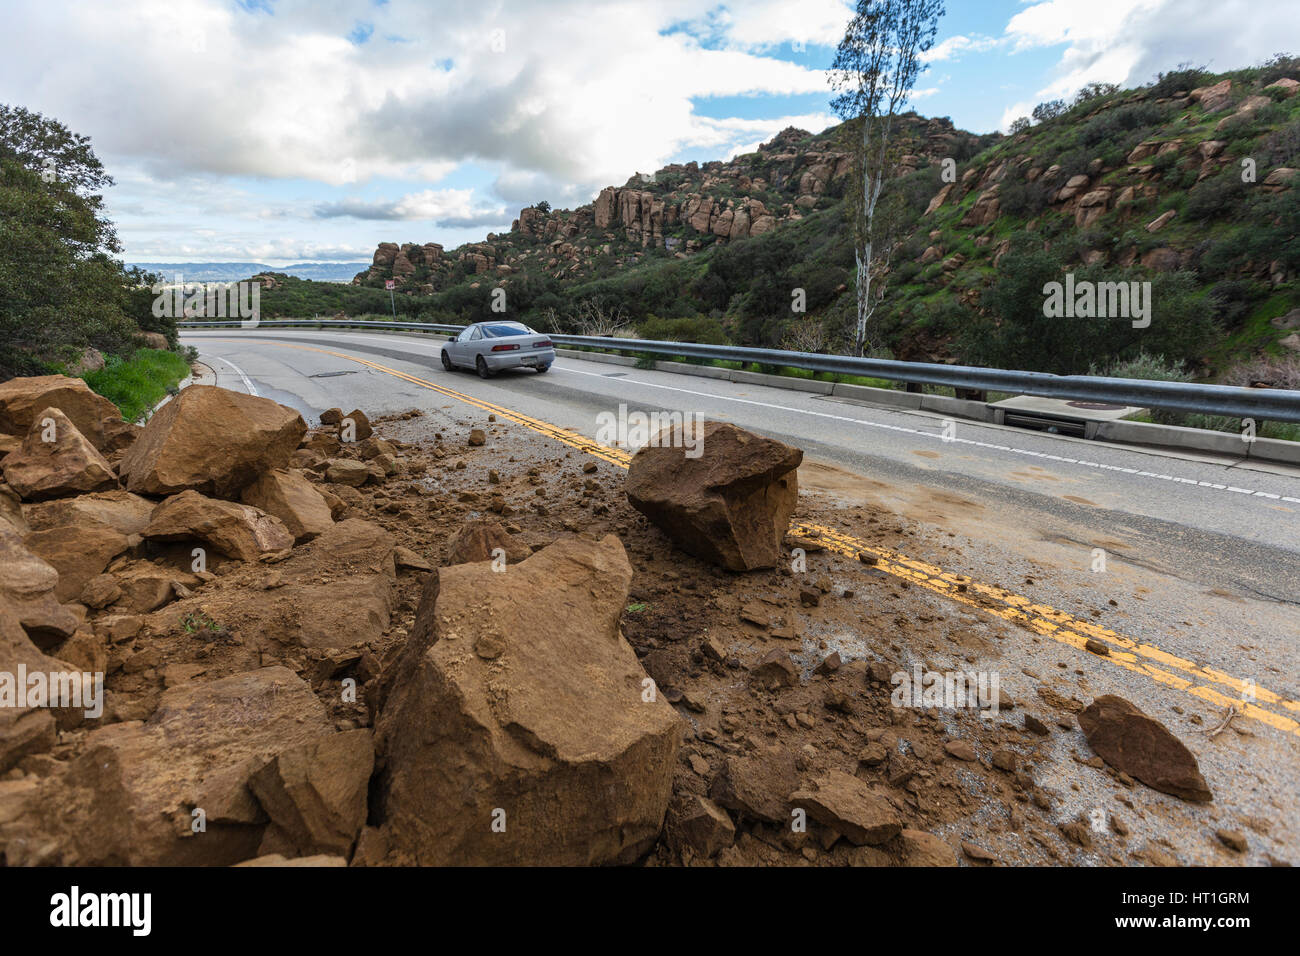 Los Angeles, Kalifornien, USA - 18. Februar 2017: Auto Santa Susana Passstrasse im San Fernando Valley Sturm verursacht Steinlawine weitergeben. Stockfoto